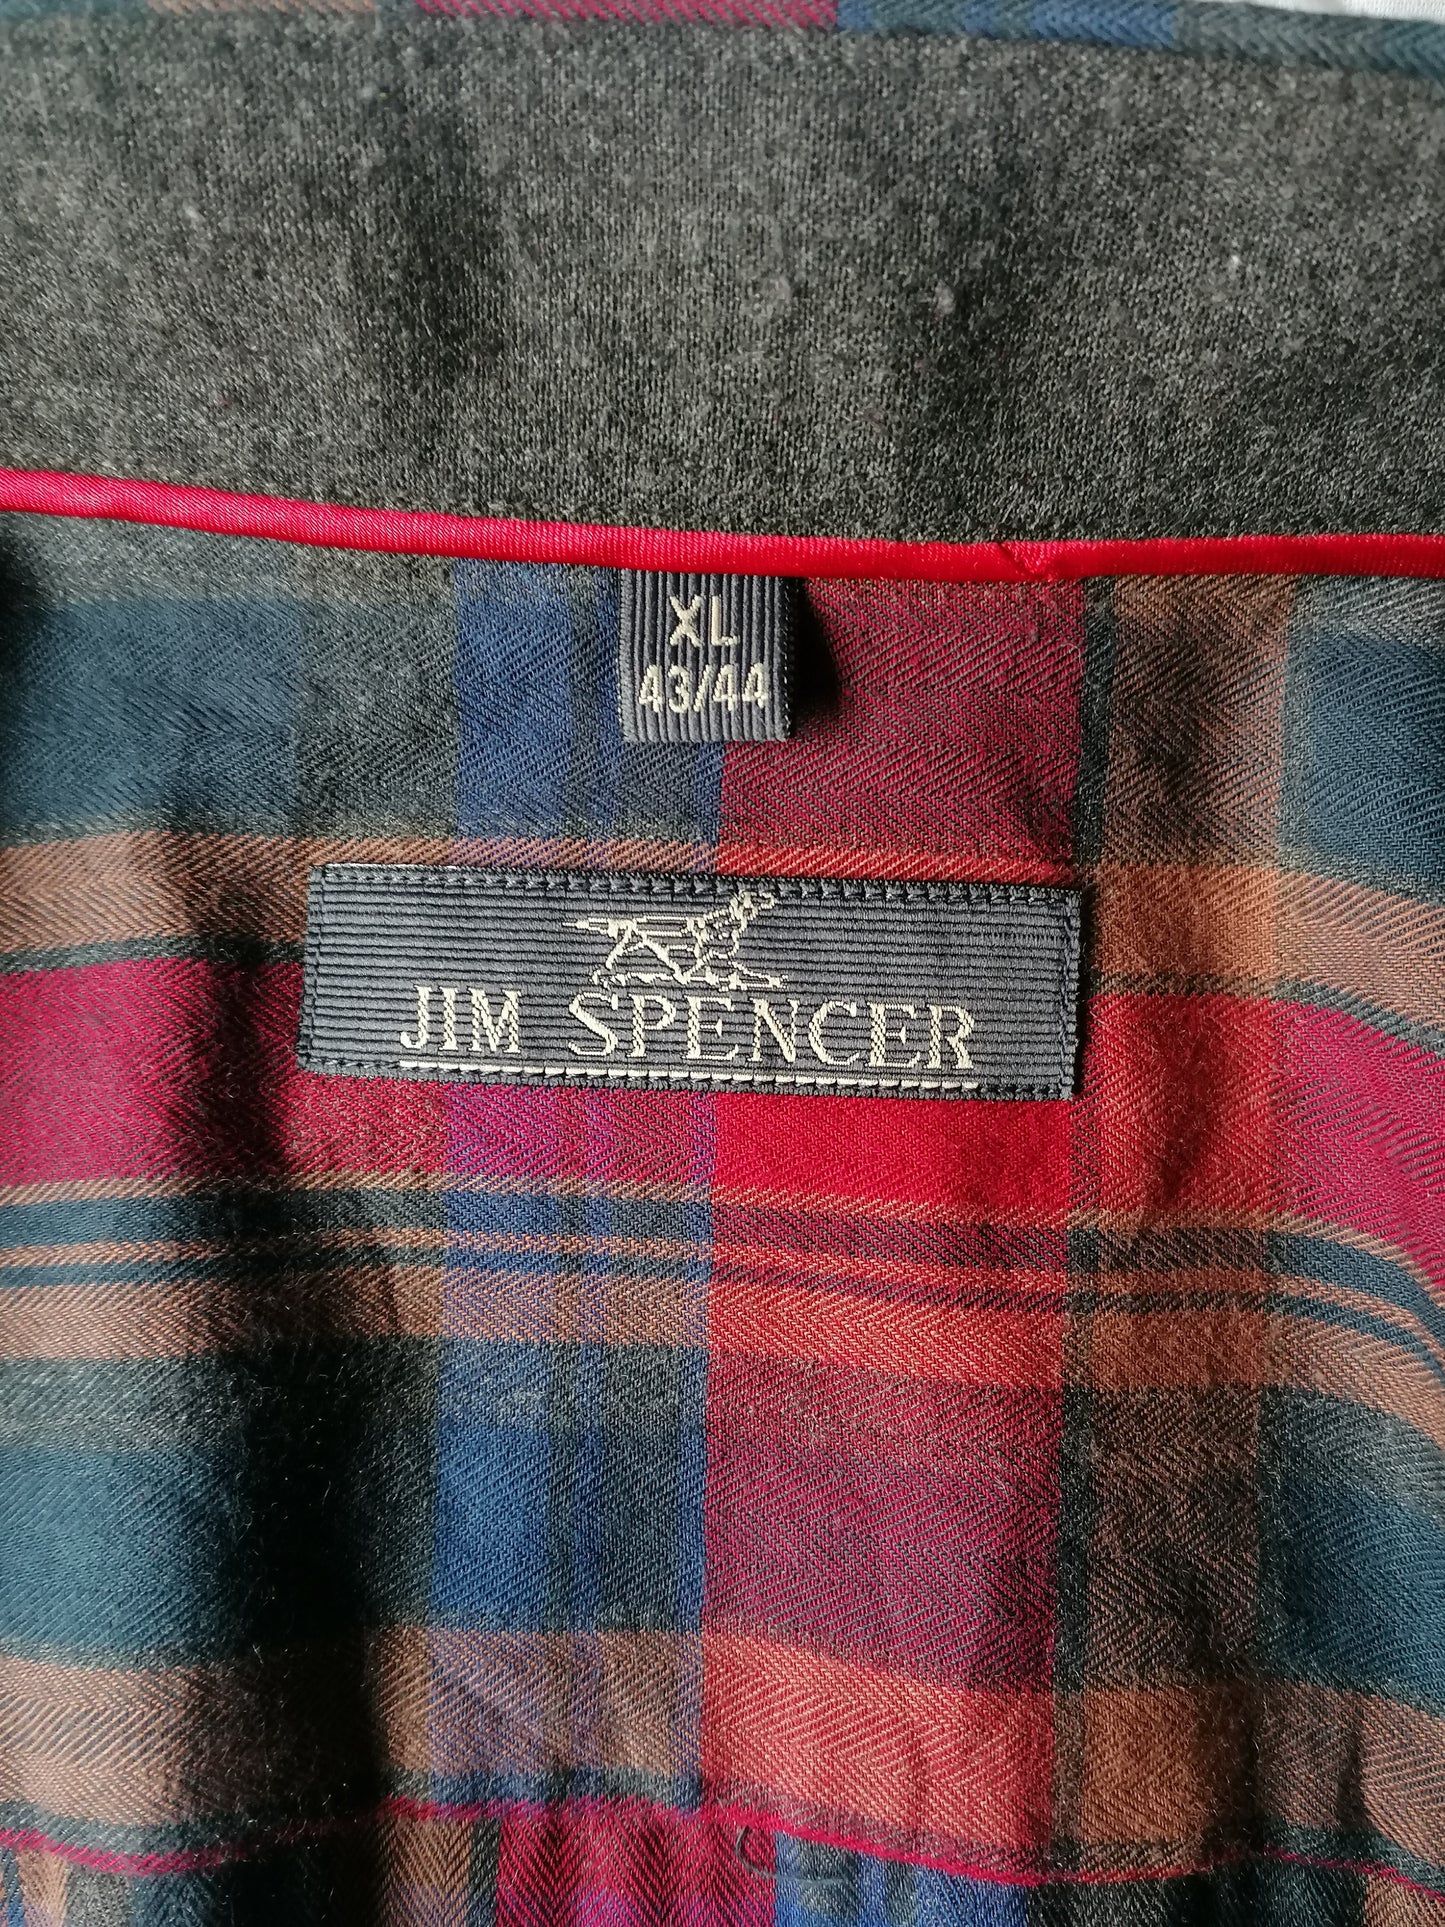 Camisa de Jim Spencer. Marrón azul rojo revisado. Tamaño xl.